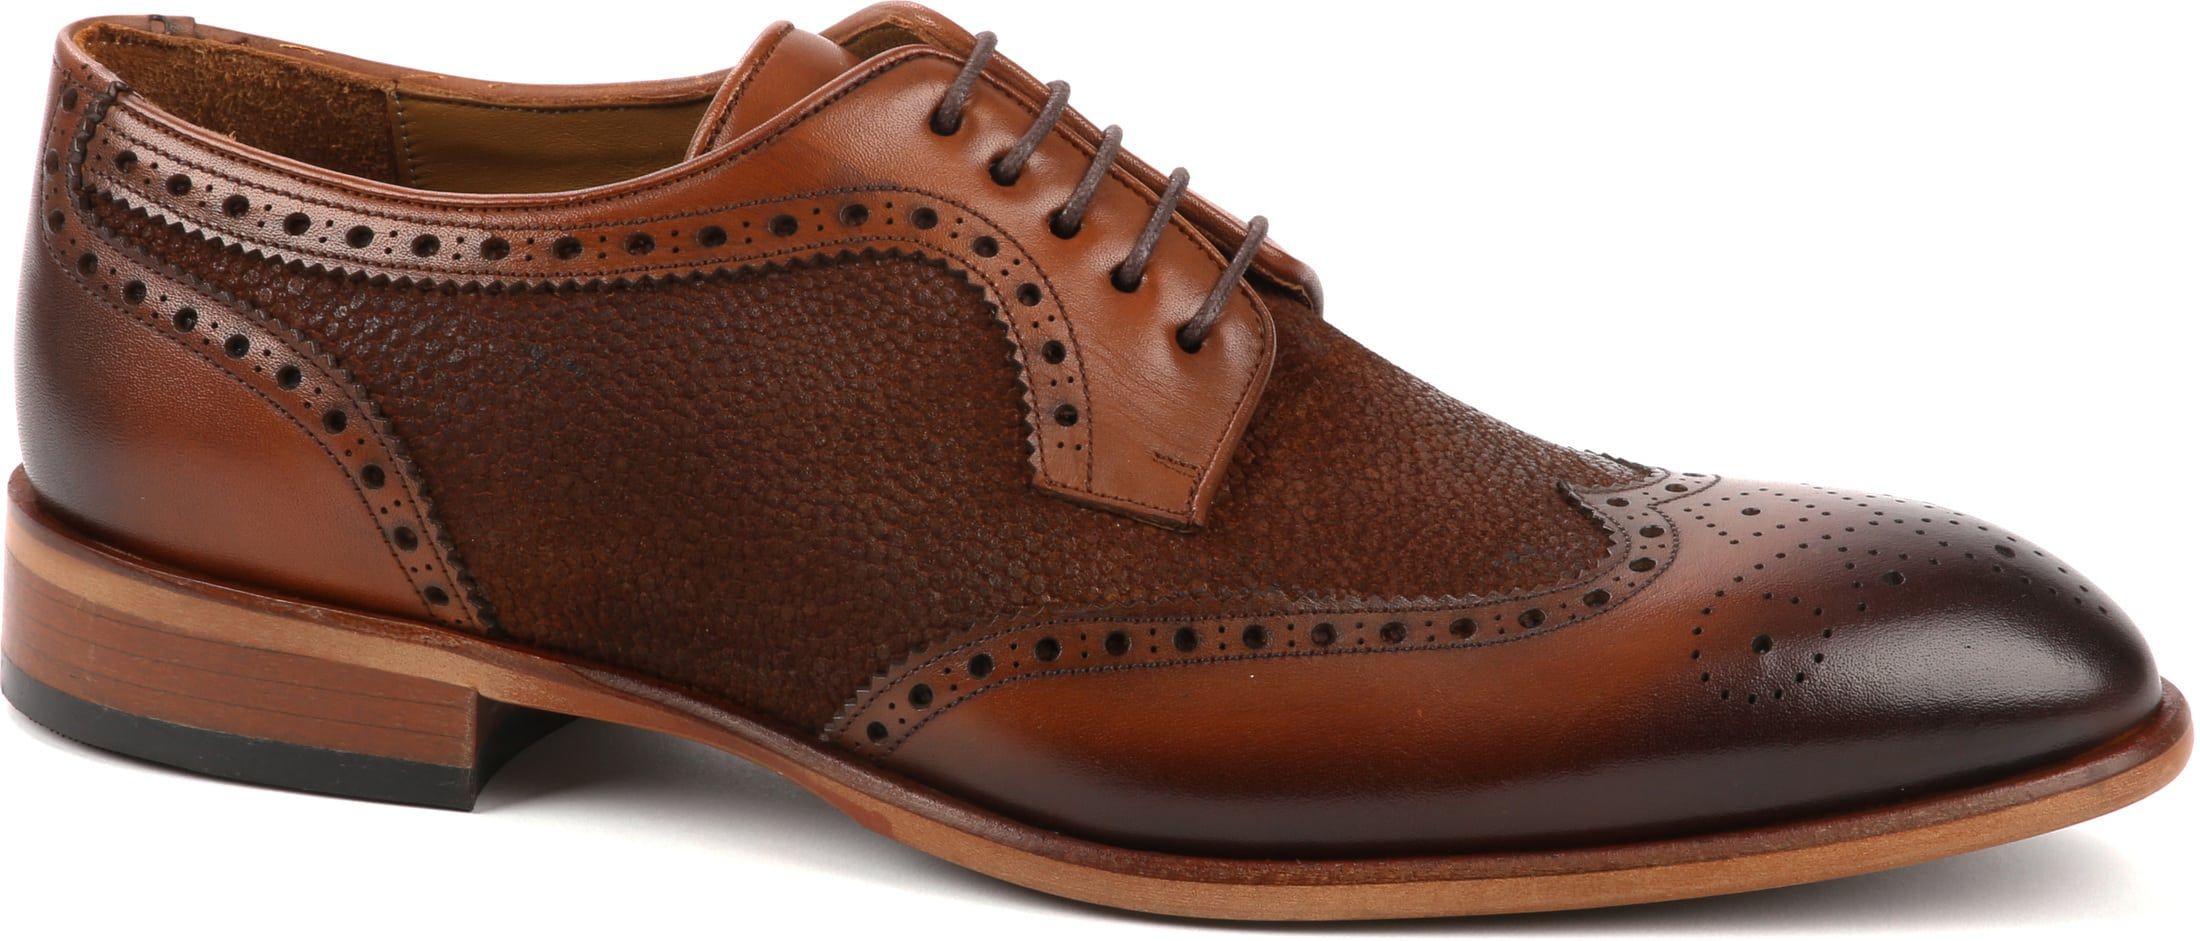 Suitable Leather Shoe Dessin Brown Cognac size 11.5